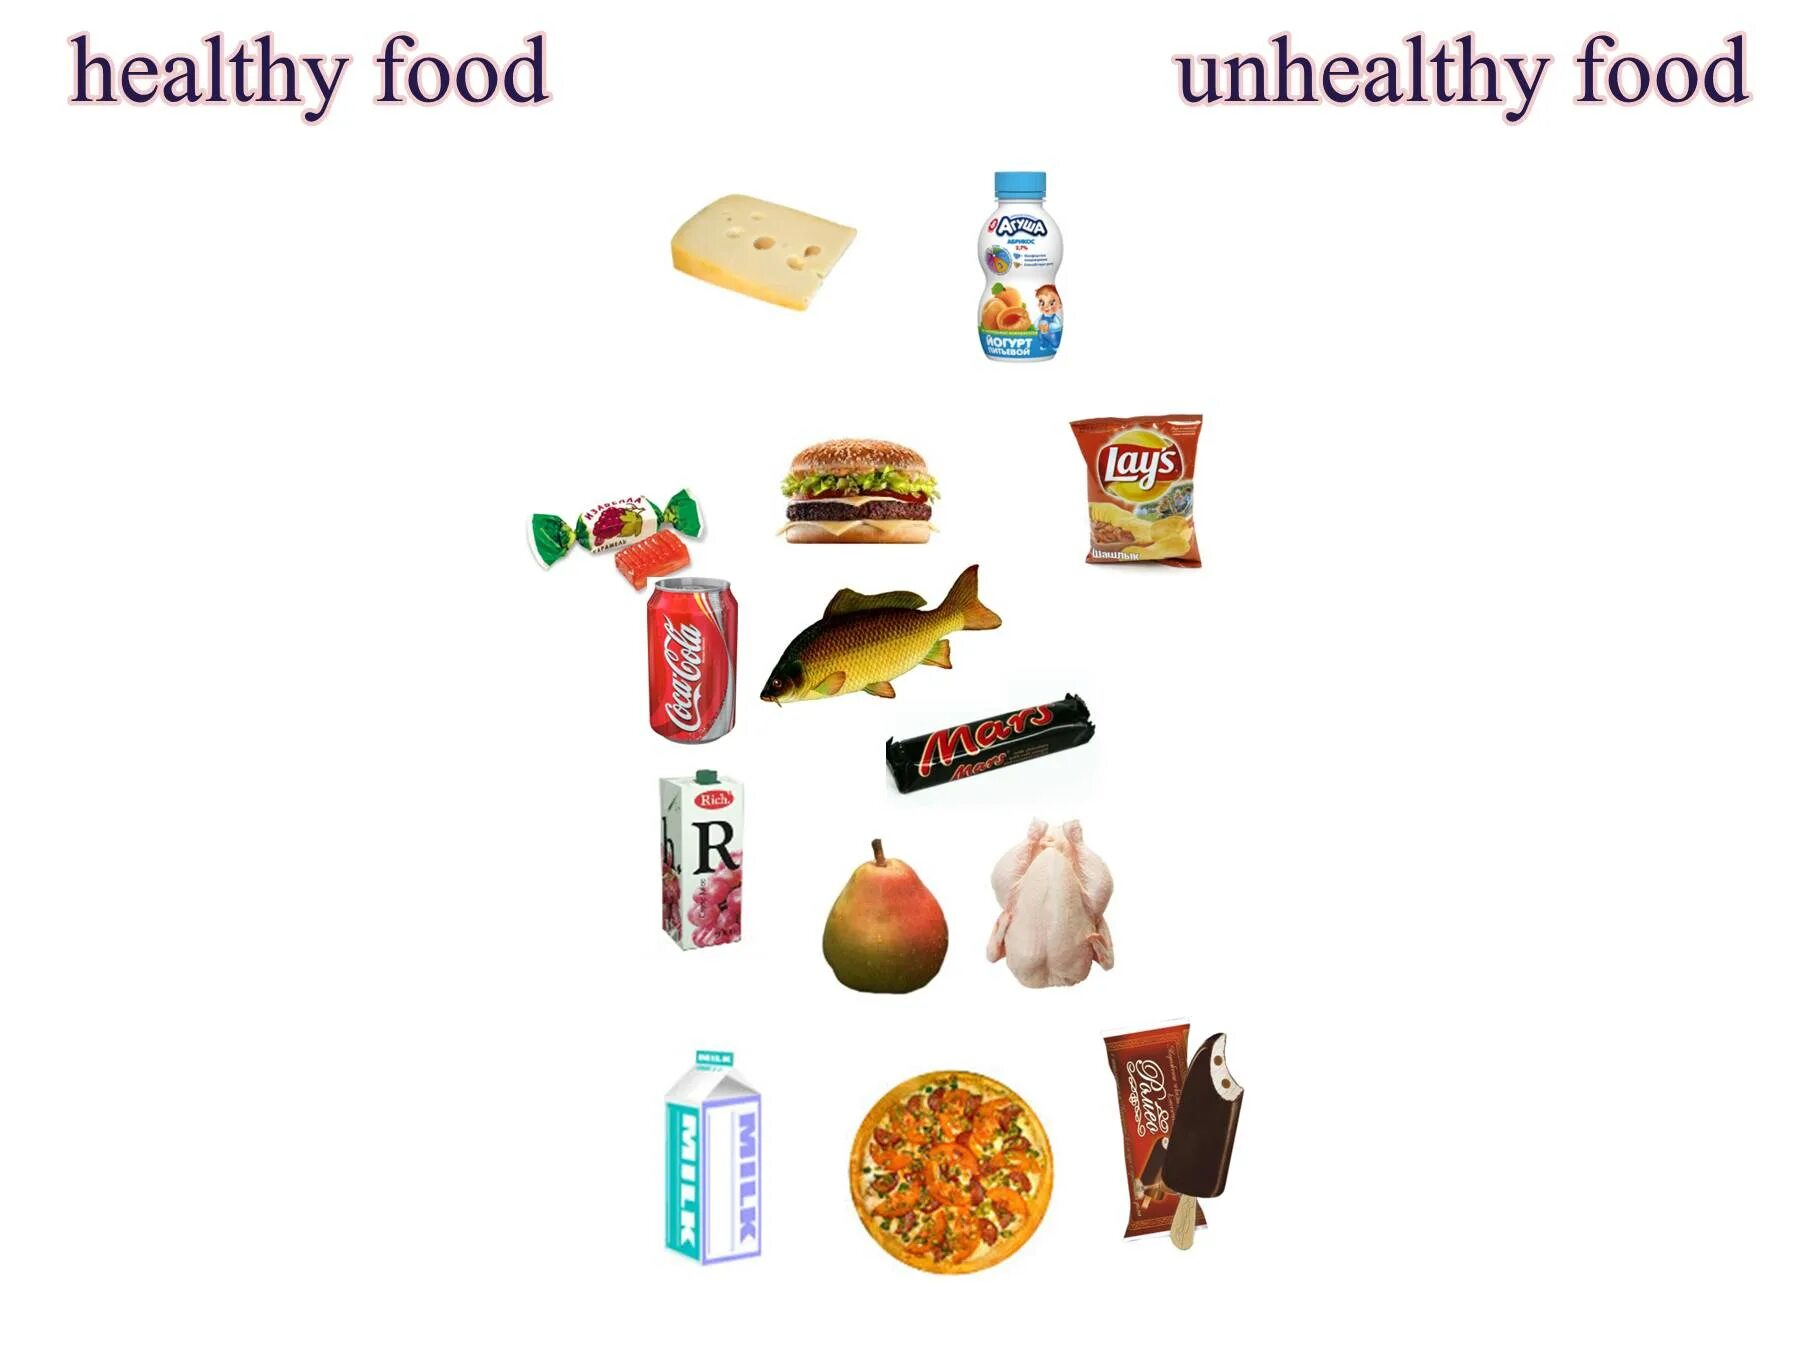 Healthy and unhealthy food для детей. Здоровая и нездоровая еда англ. Проект healthy food and unhealthy food. Полезная и вредная еда на английском. Проект еда по английскому языку 4 класс